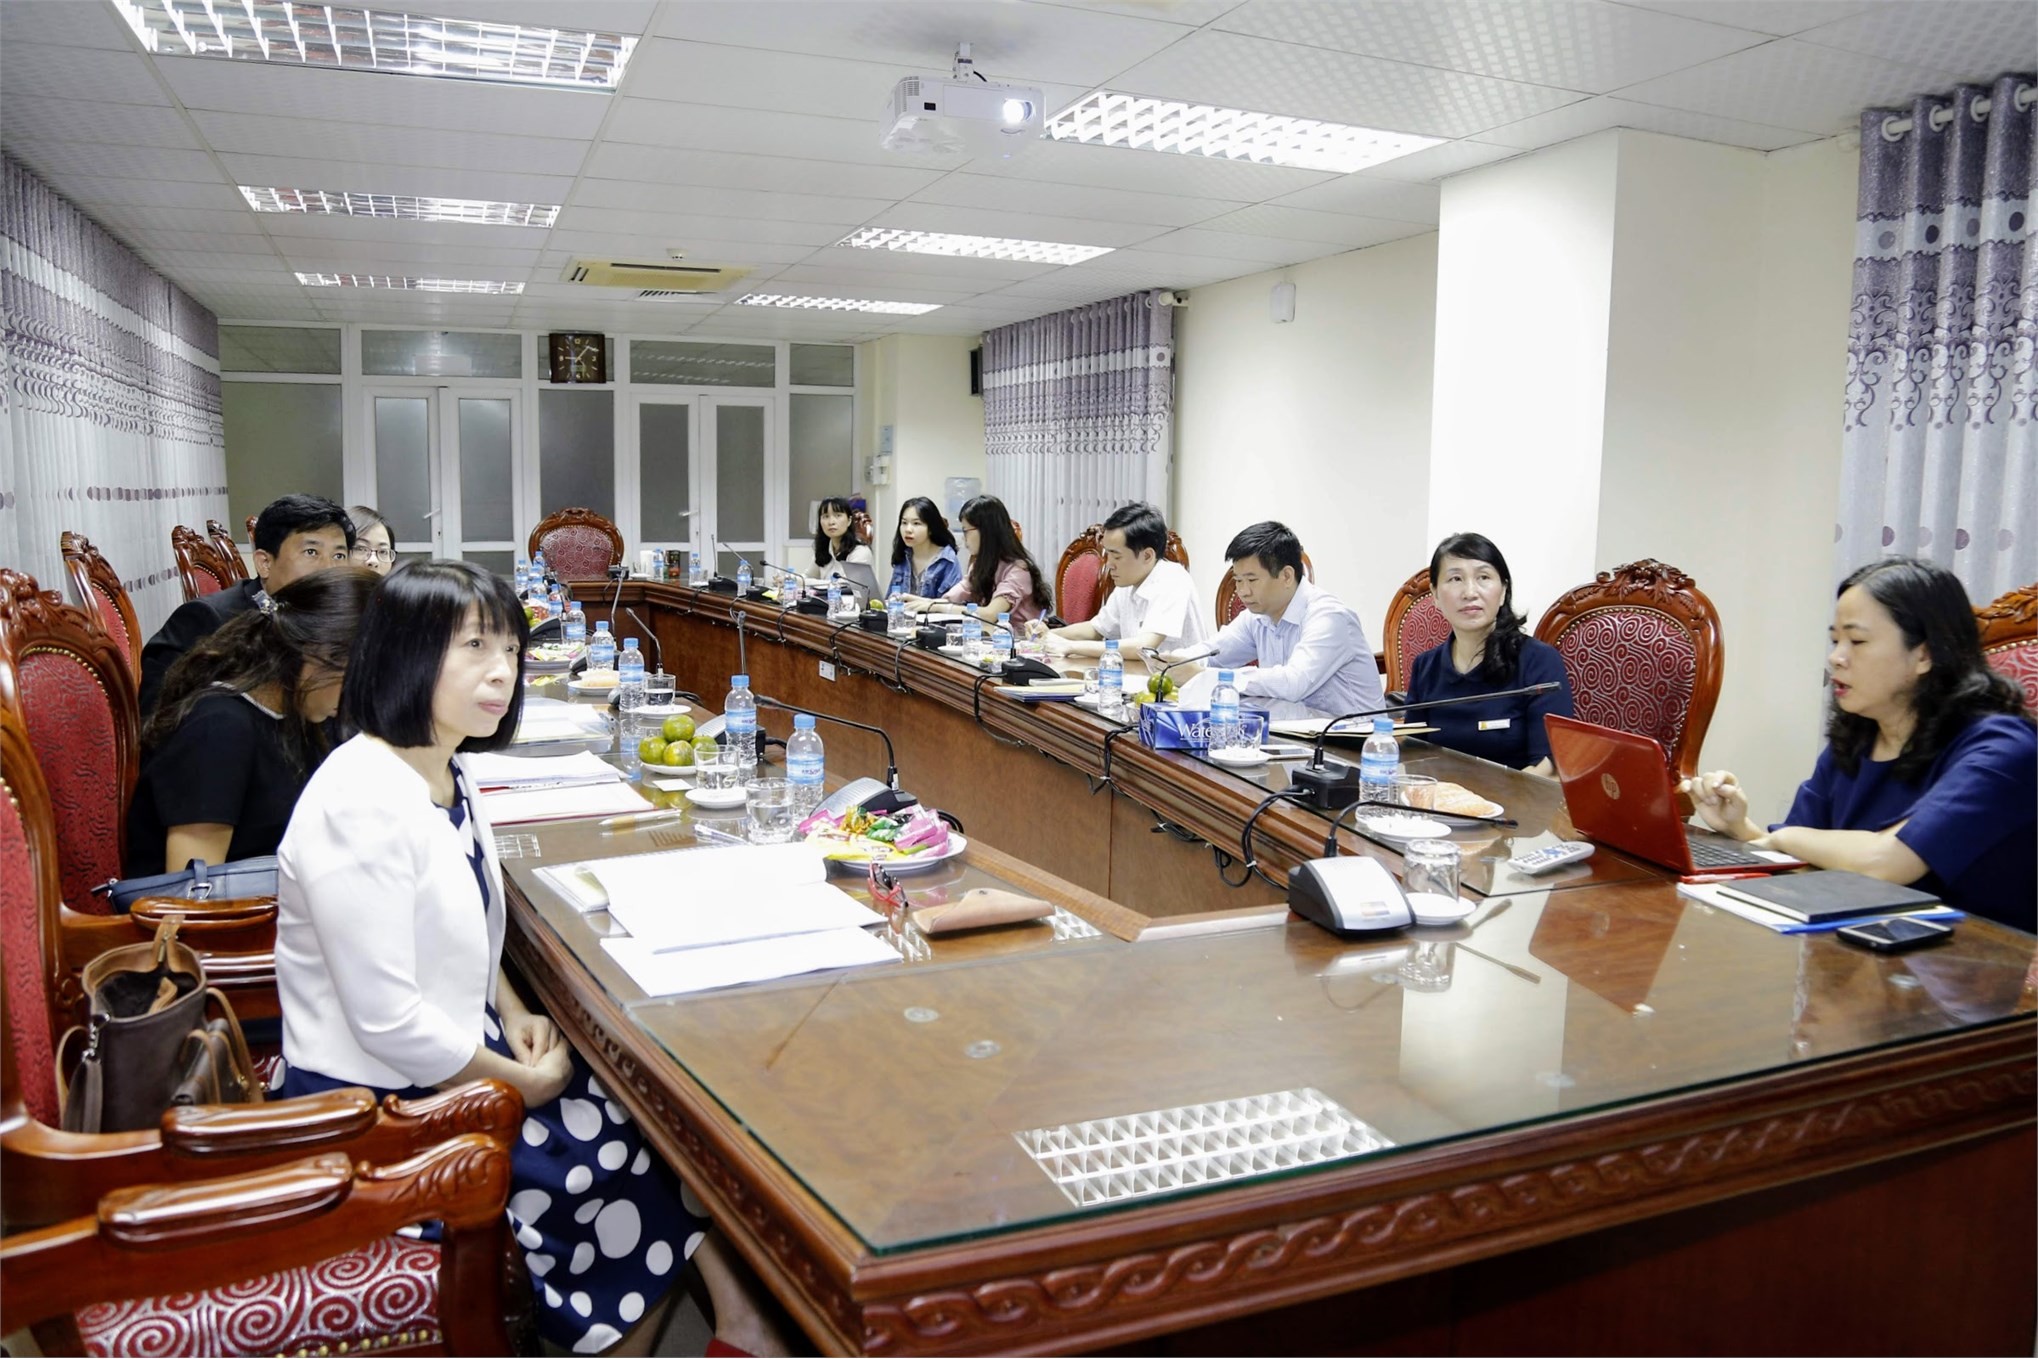 Ngành Ngôn ngữ Nhật Bản sẽ được đào tạo tại Đại học Công nghiệp Hà Nội trong năm 2019